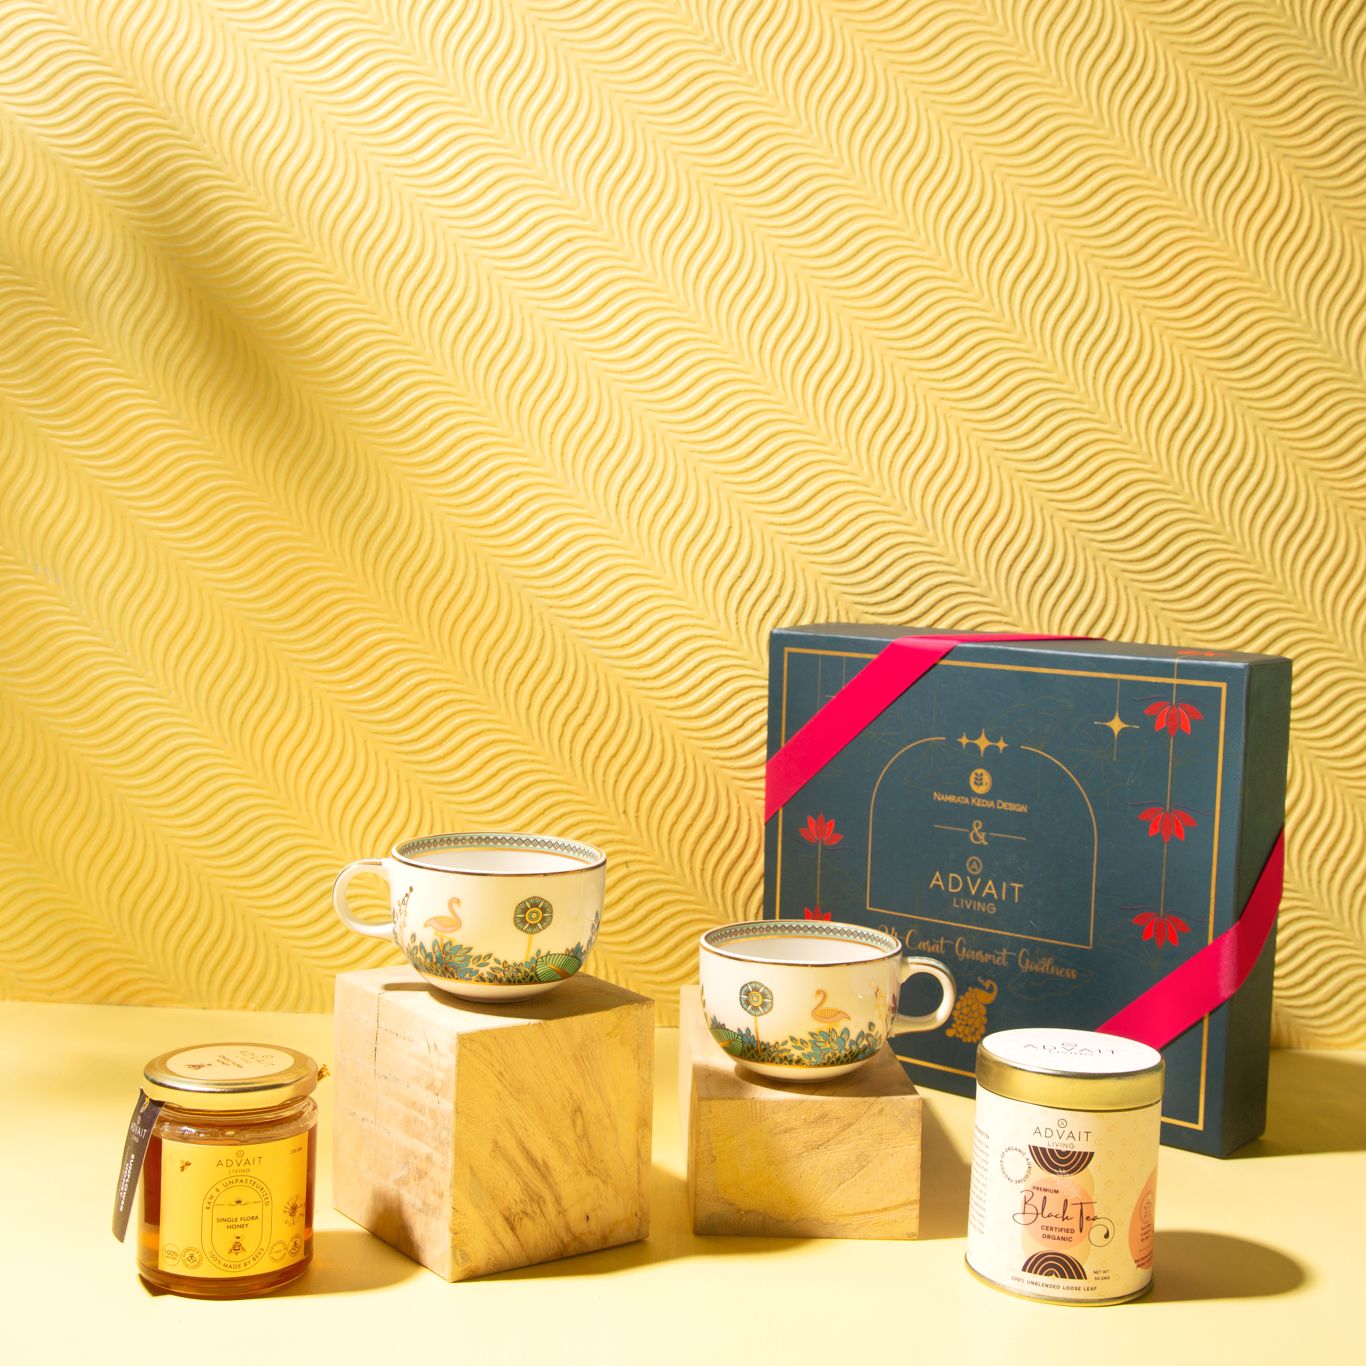 Āśaya Tête-à-Tête: Artisanal Tea Gift Box for Two